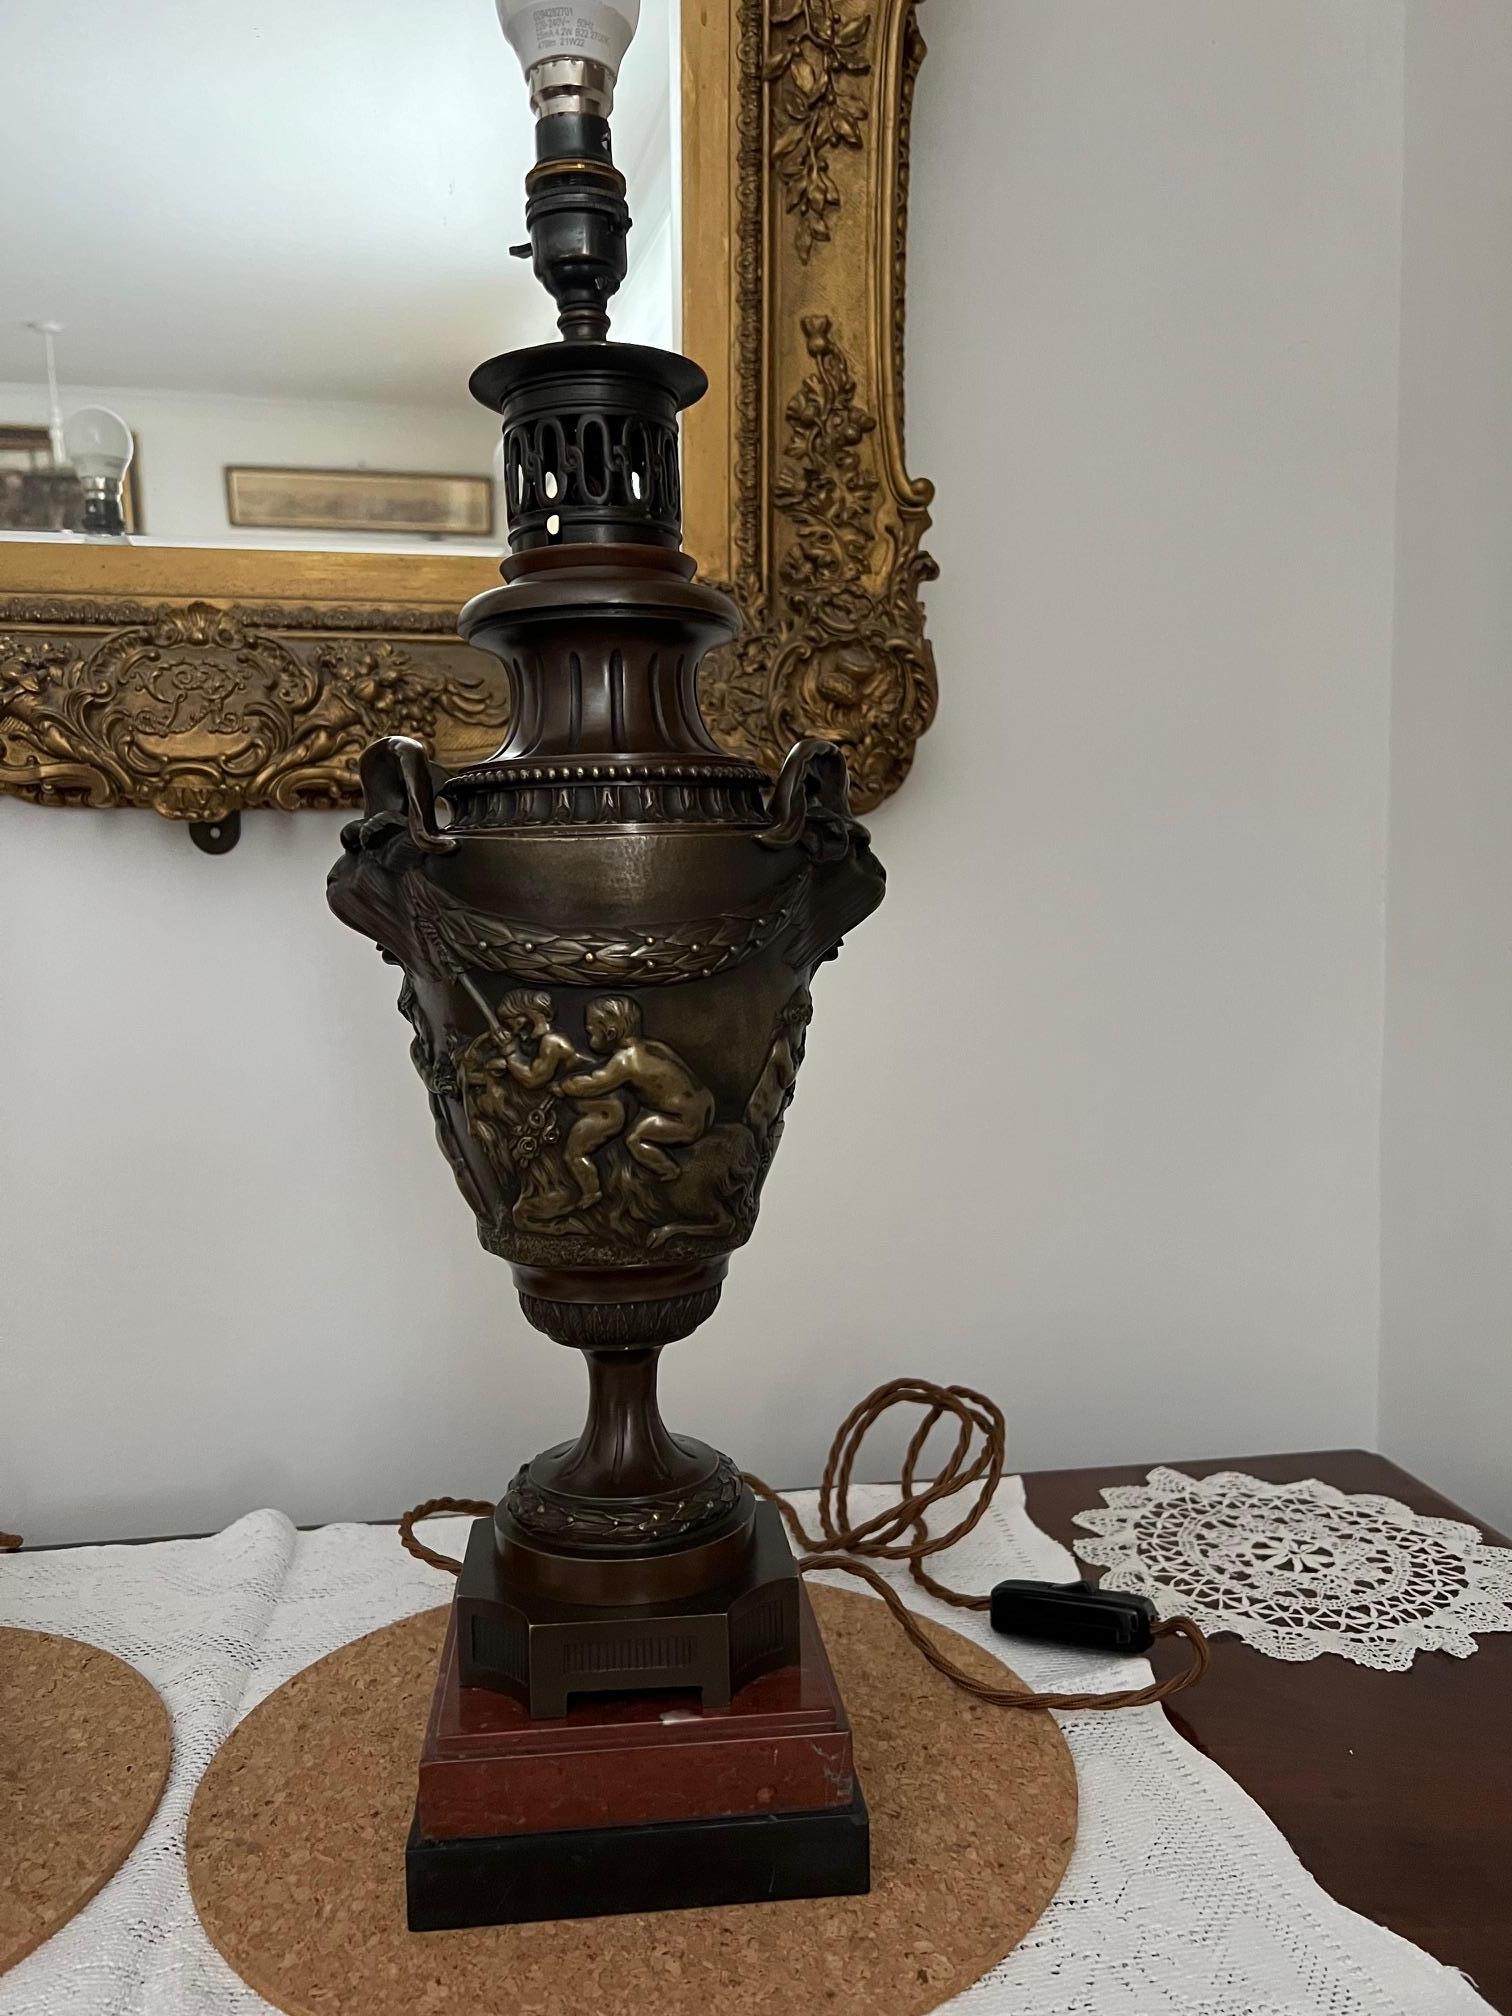 Merveilleuses lampes de table en bronze avec poignées en forme de bêtes à cornes mythiques.

Le corps est entouré de chérubins qui s'amusent et boivent, ces derniers présentant quelques signes de polissage à la surface.

Le reste des lampes a une